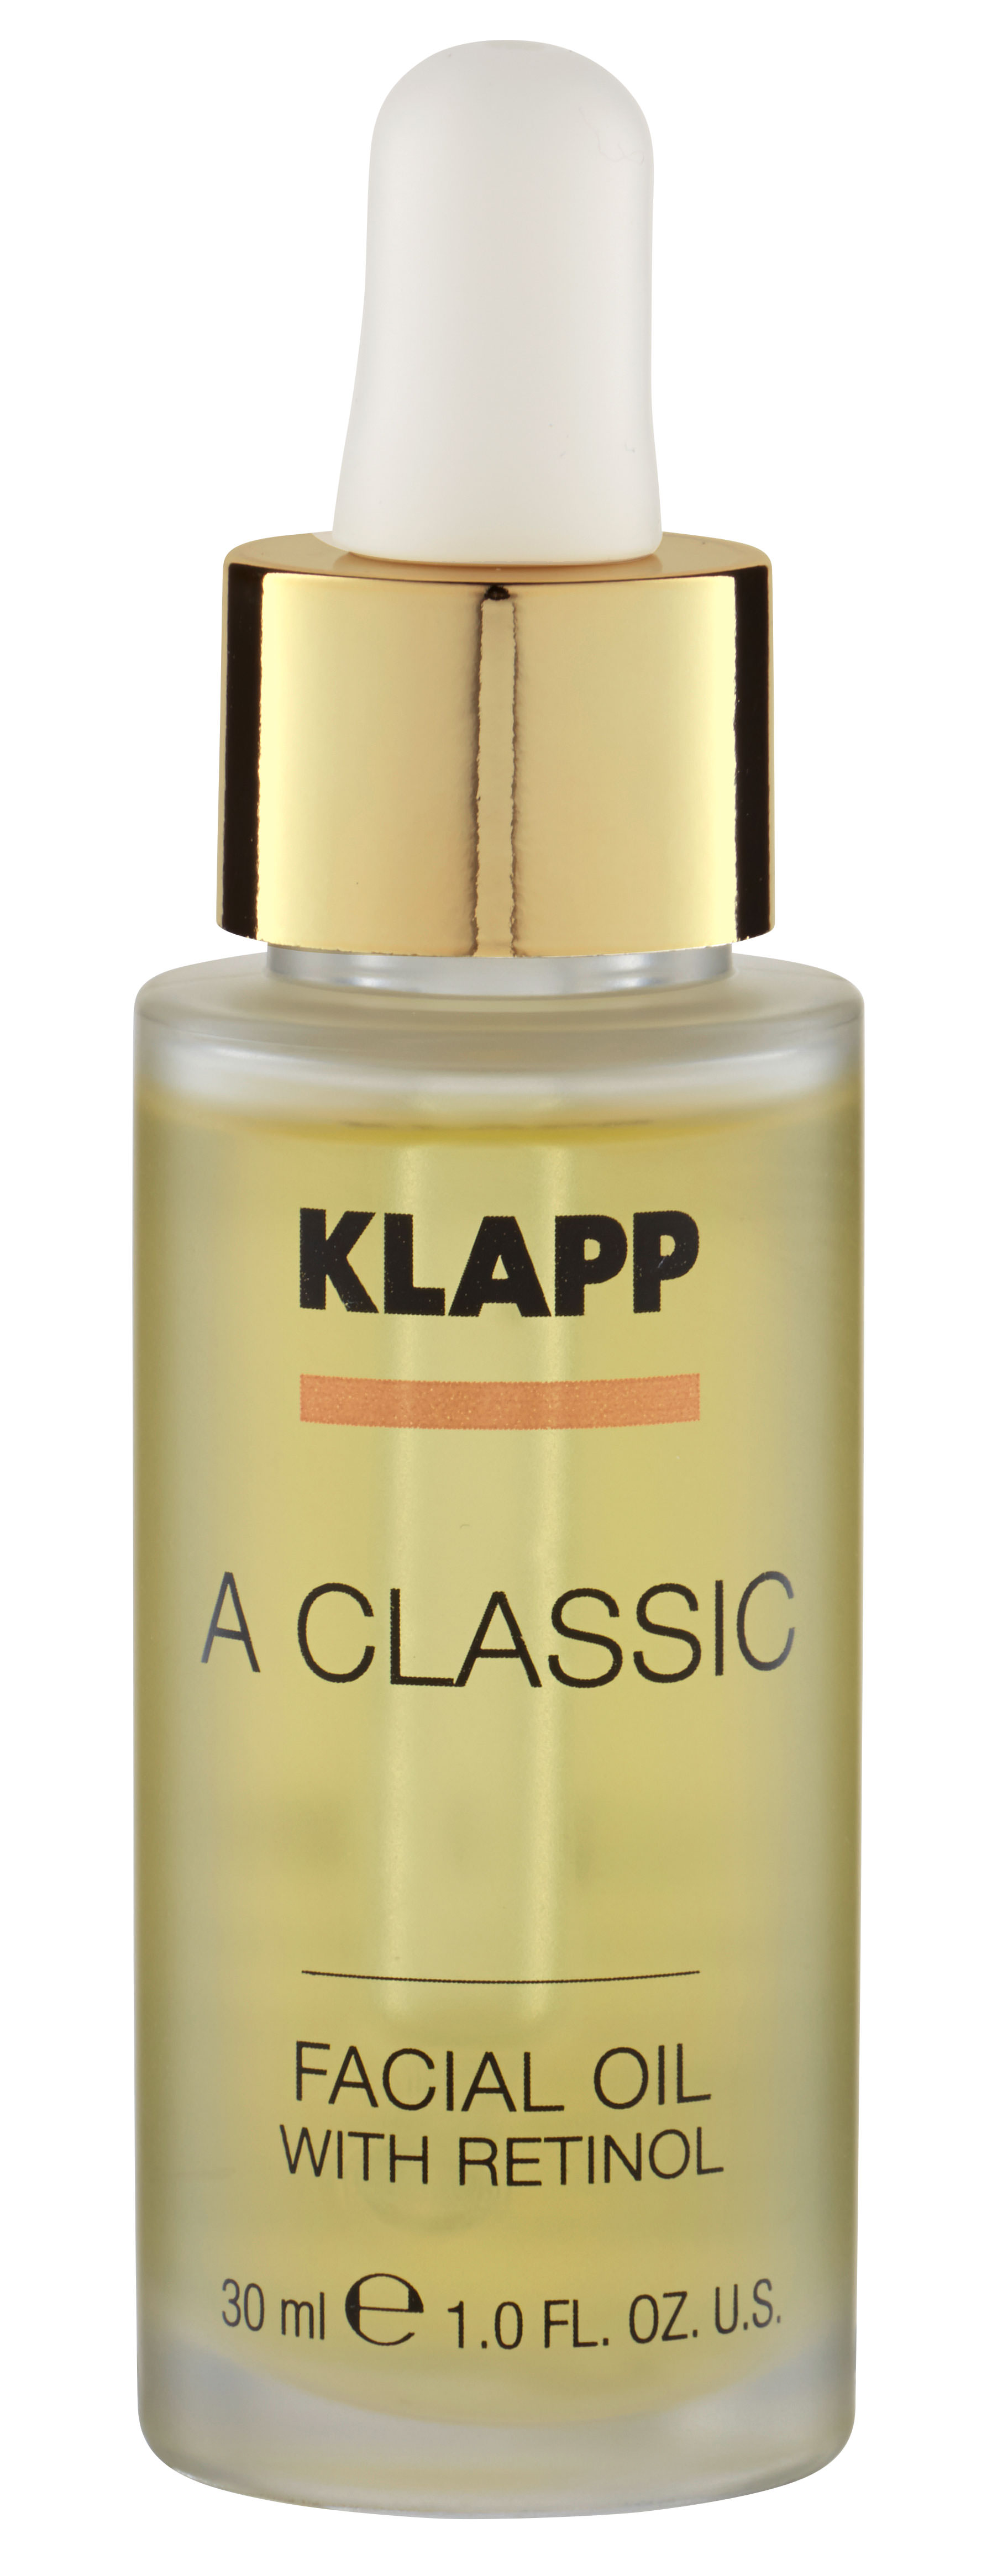 Klapp A Classic Facial Oil with Retinol